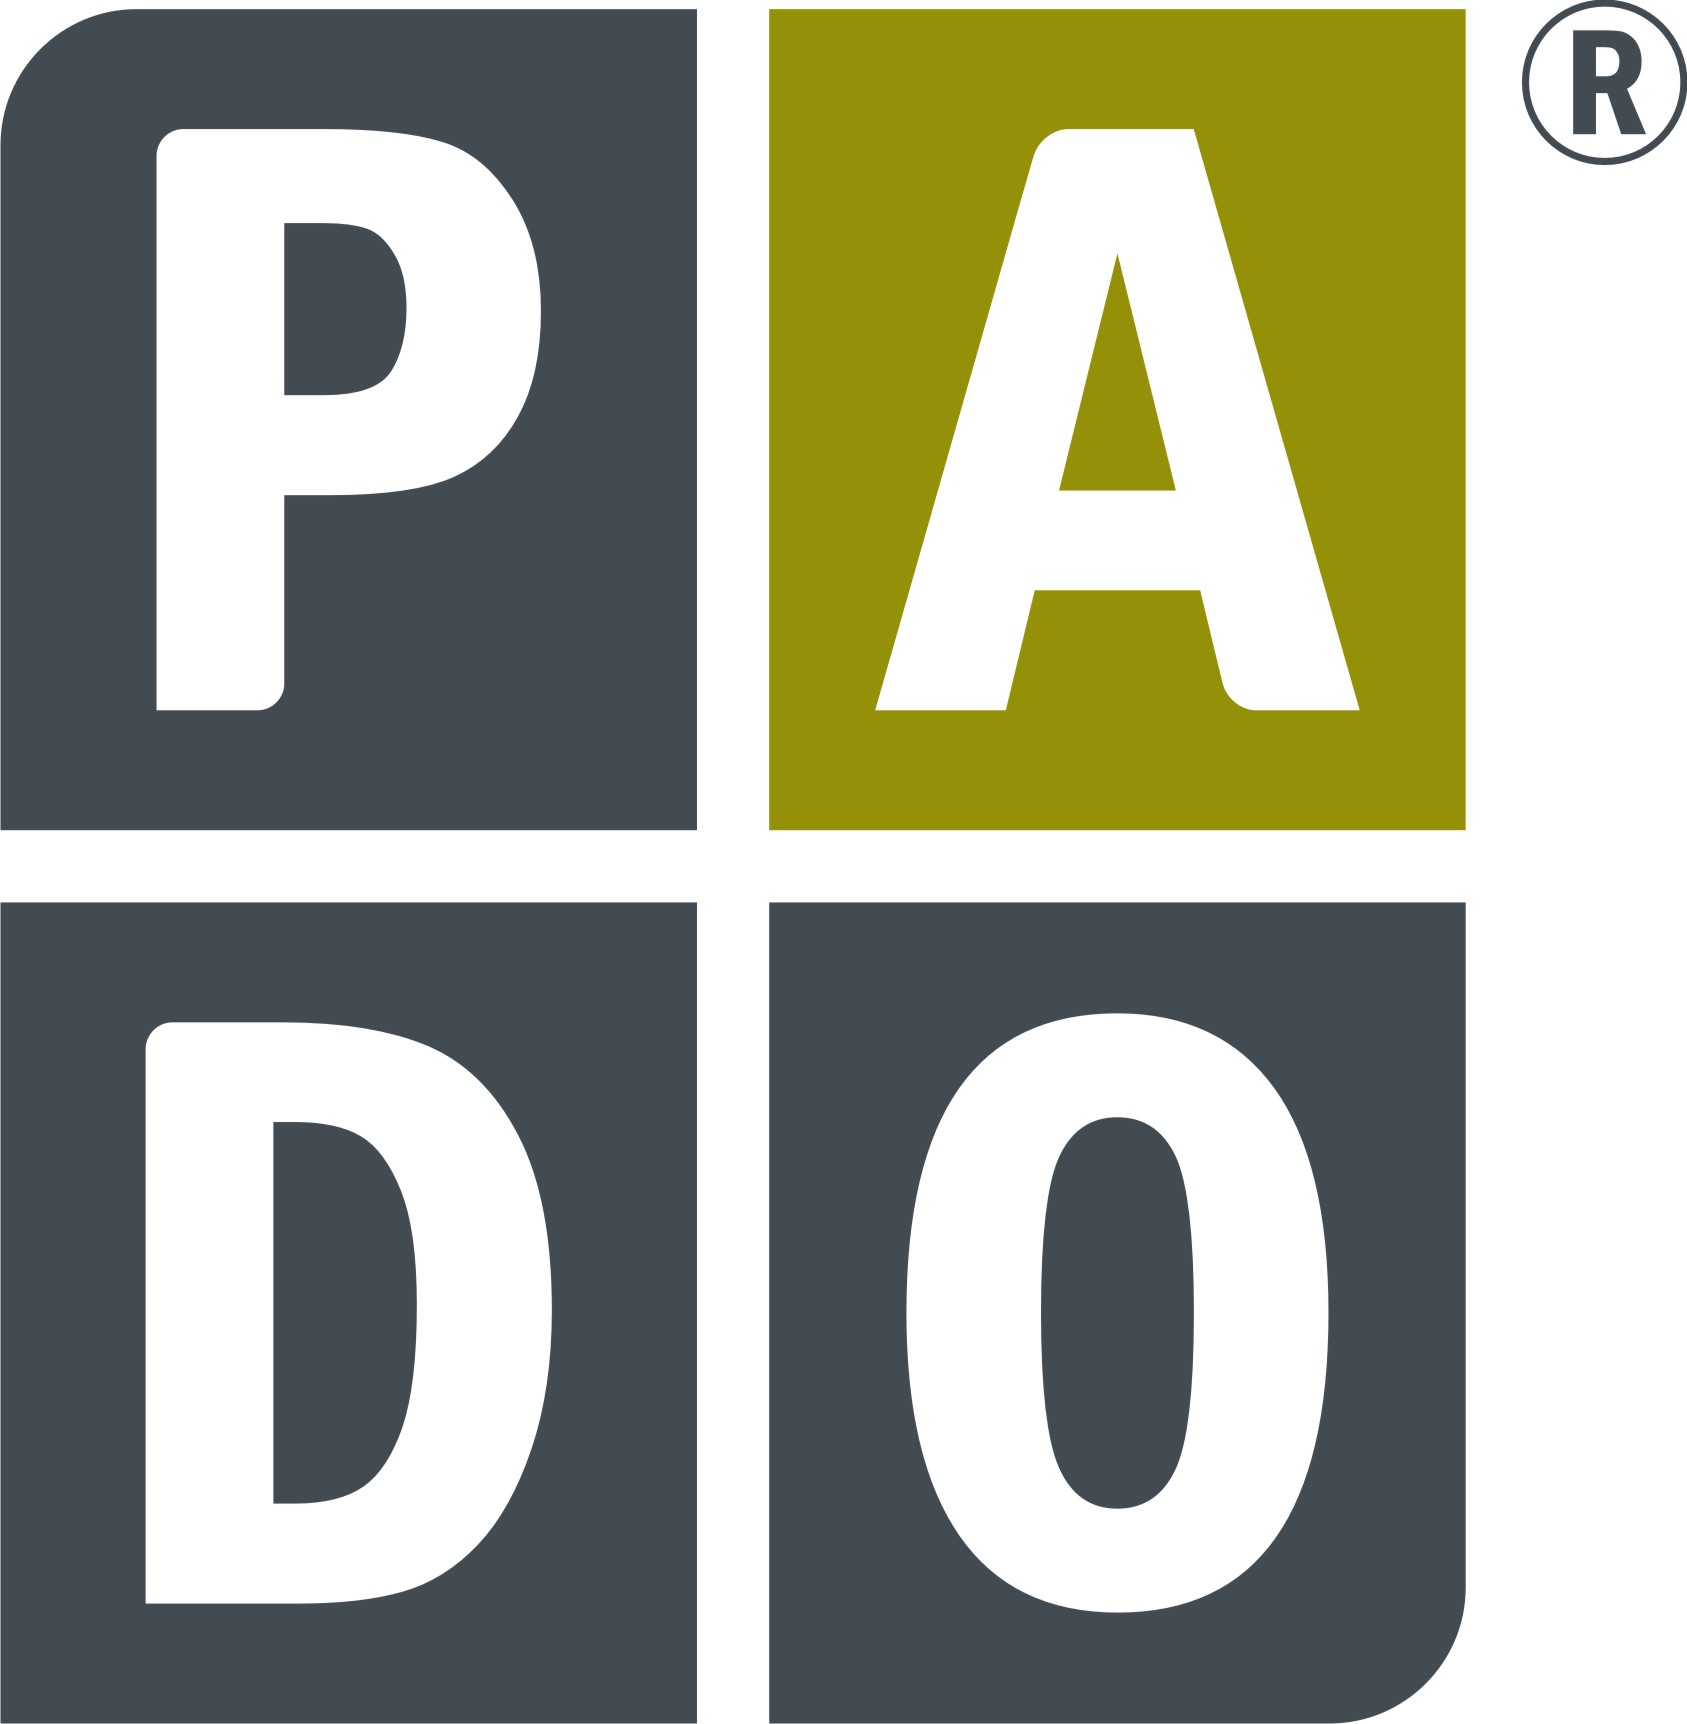 Padotec logo